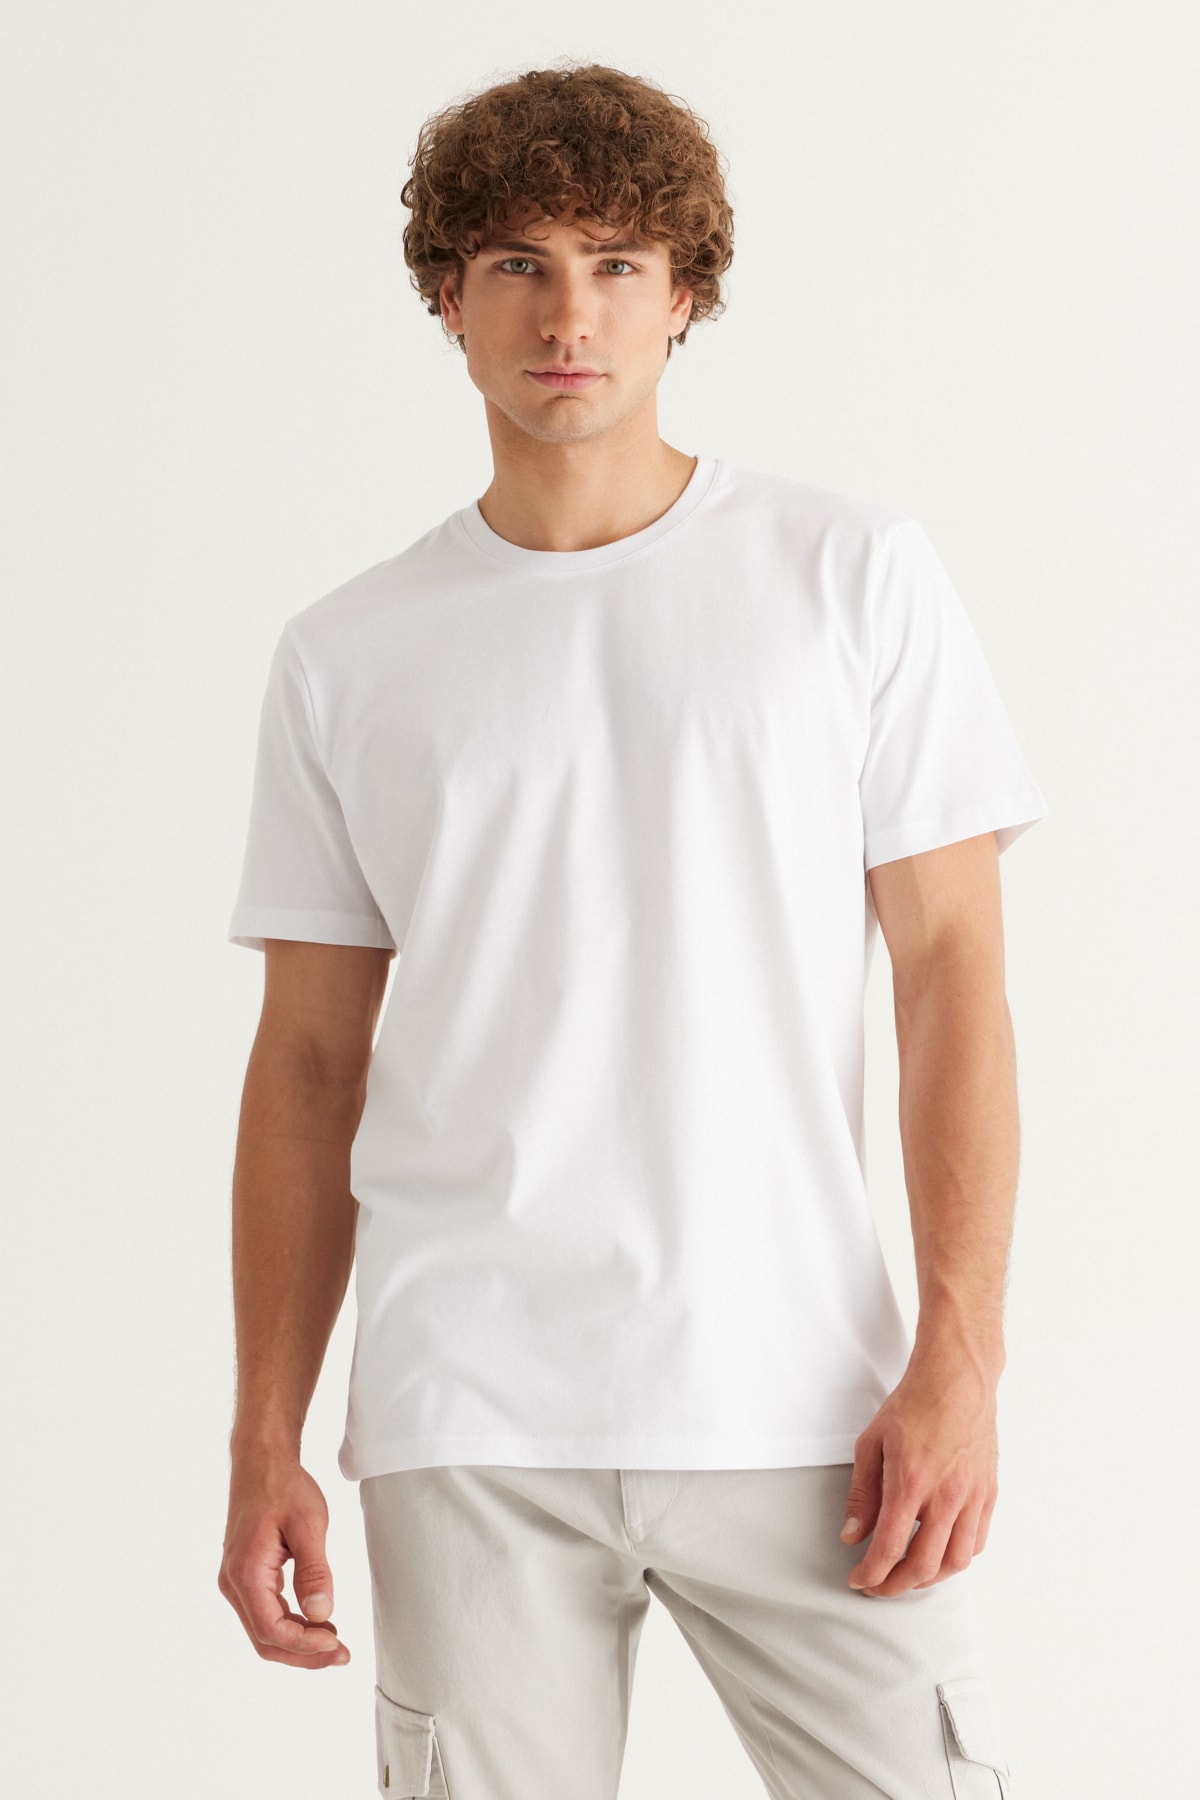 ALTINYILDIZ CLASSICS Мъжка бяла 360-градусова гъвкавост, разтягаща се във всички посоки, тениска Slim Fit Slim Fit Crewneck.